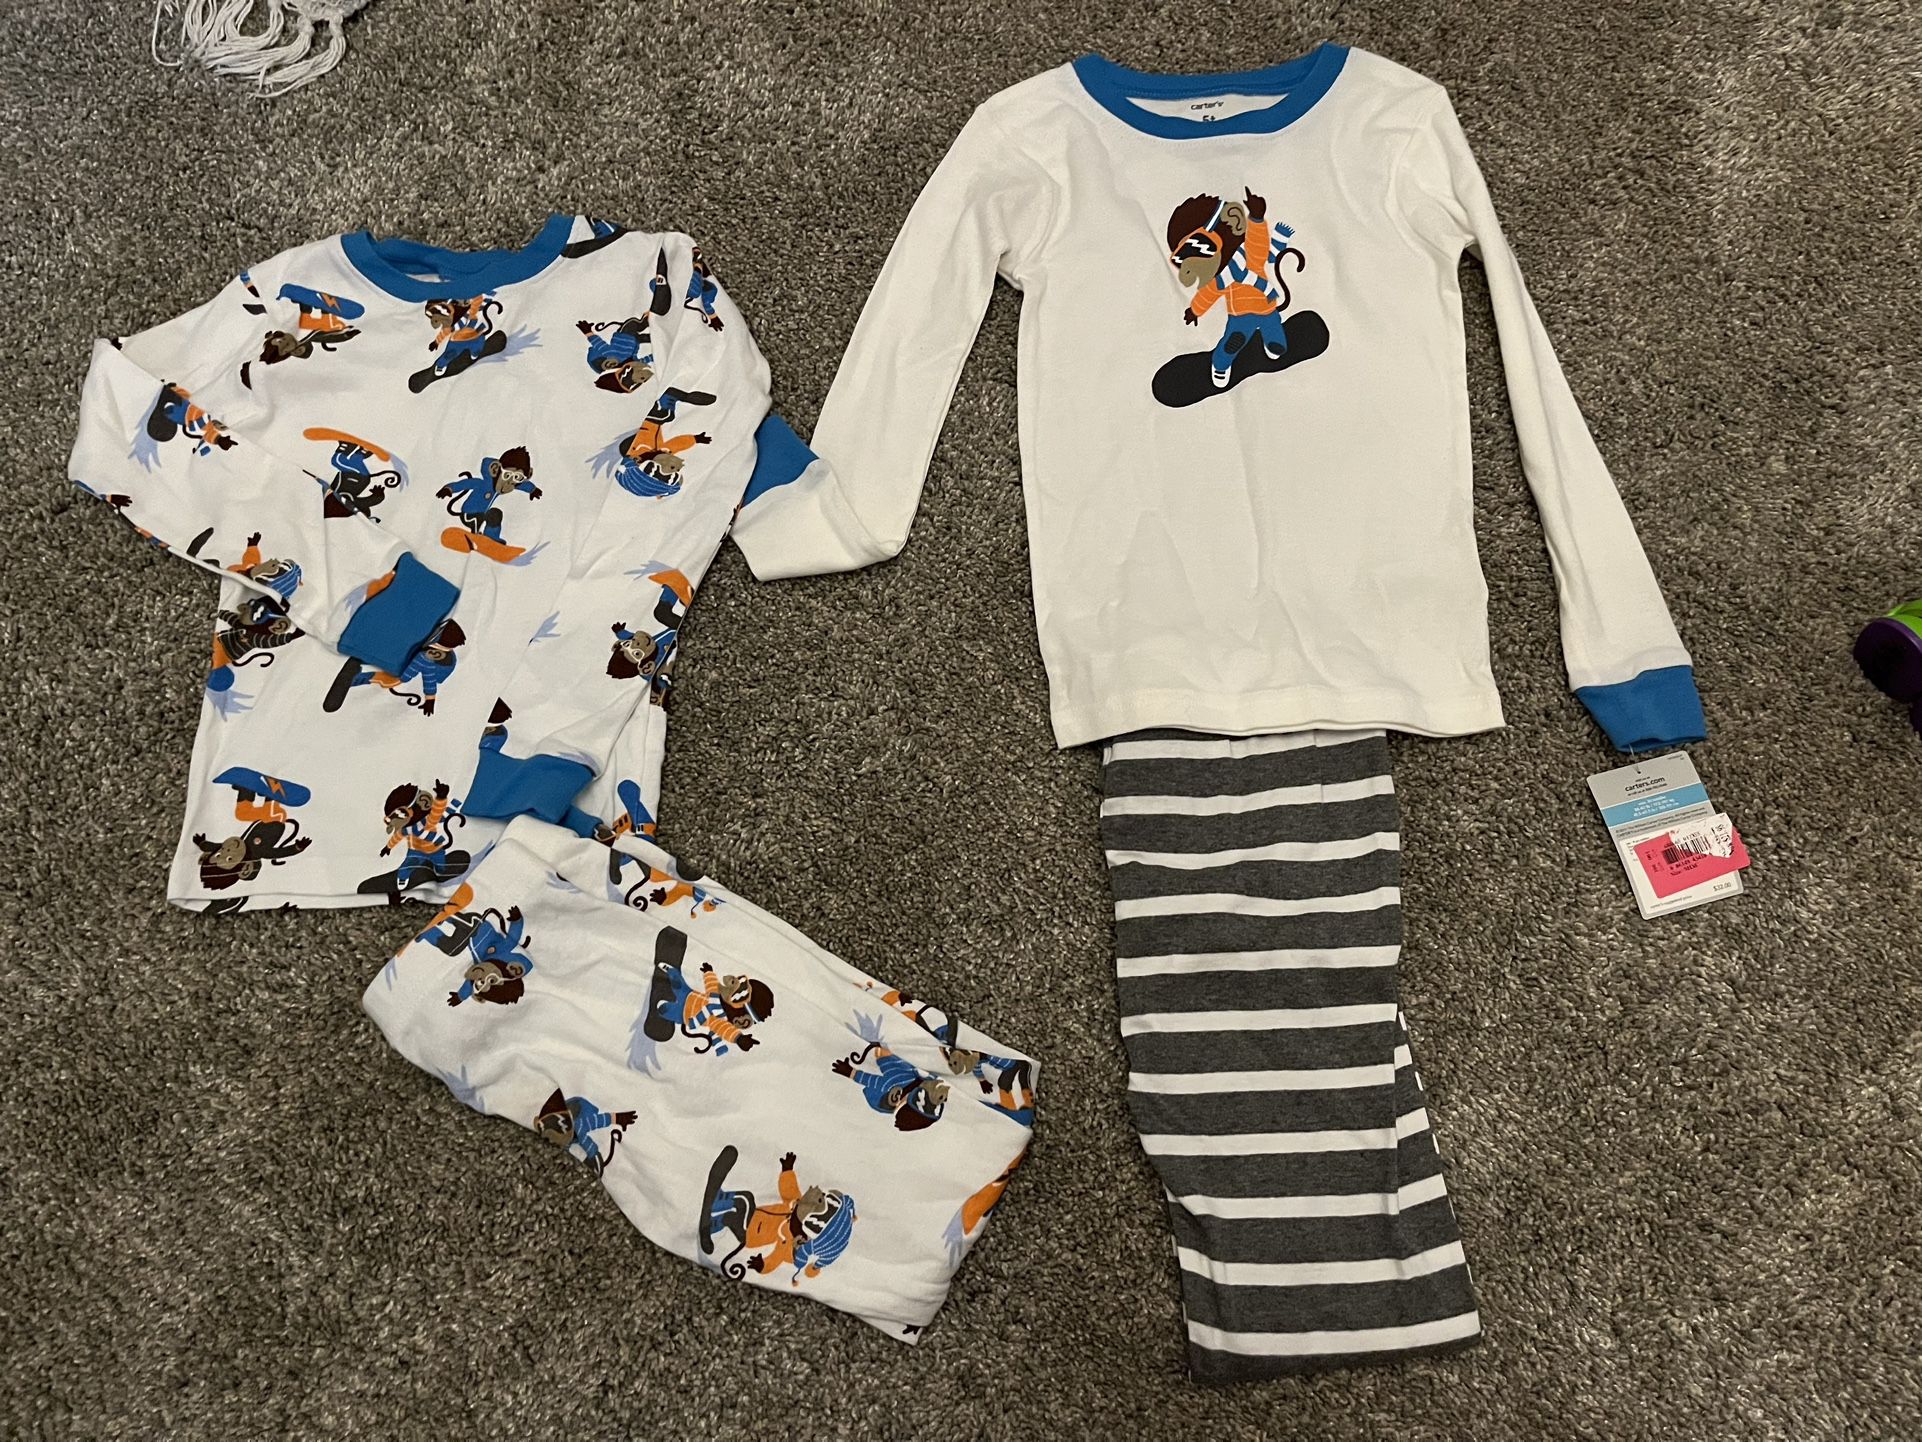 Boys Size 5 Pajamas- 2 Sets